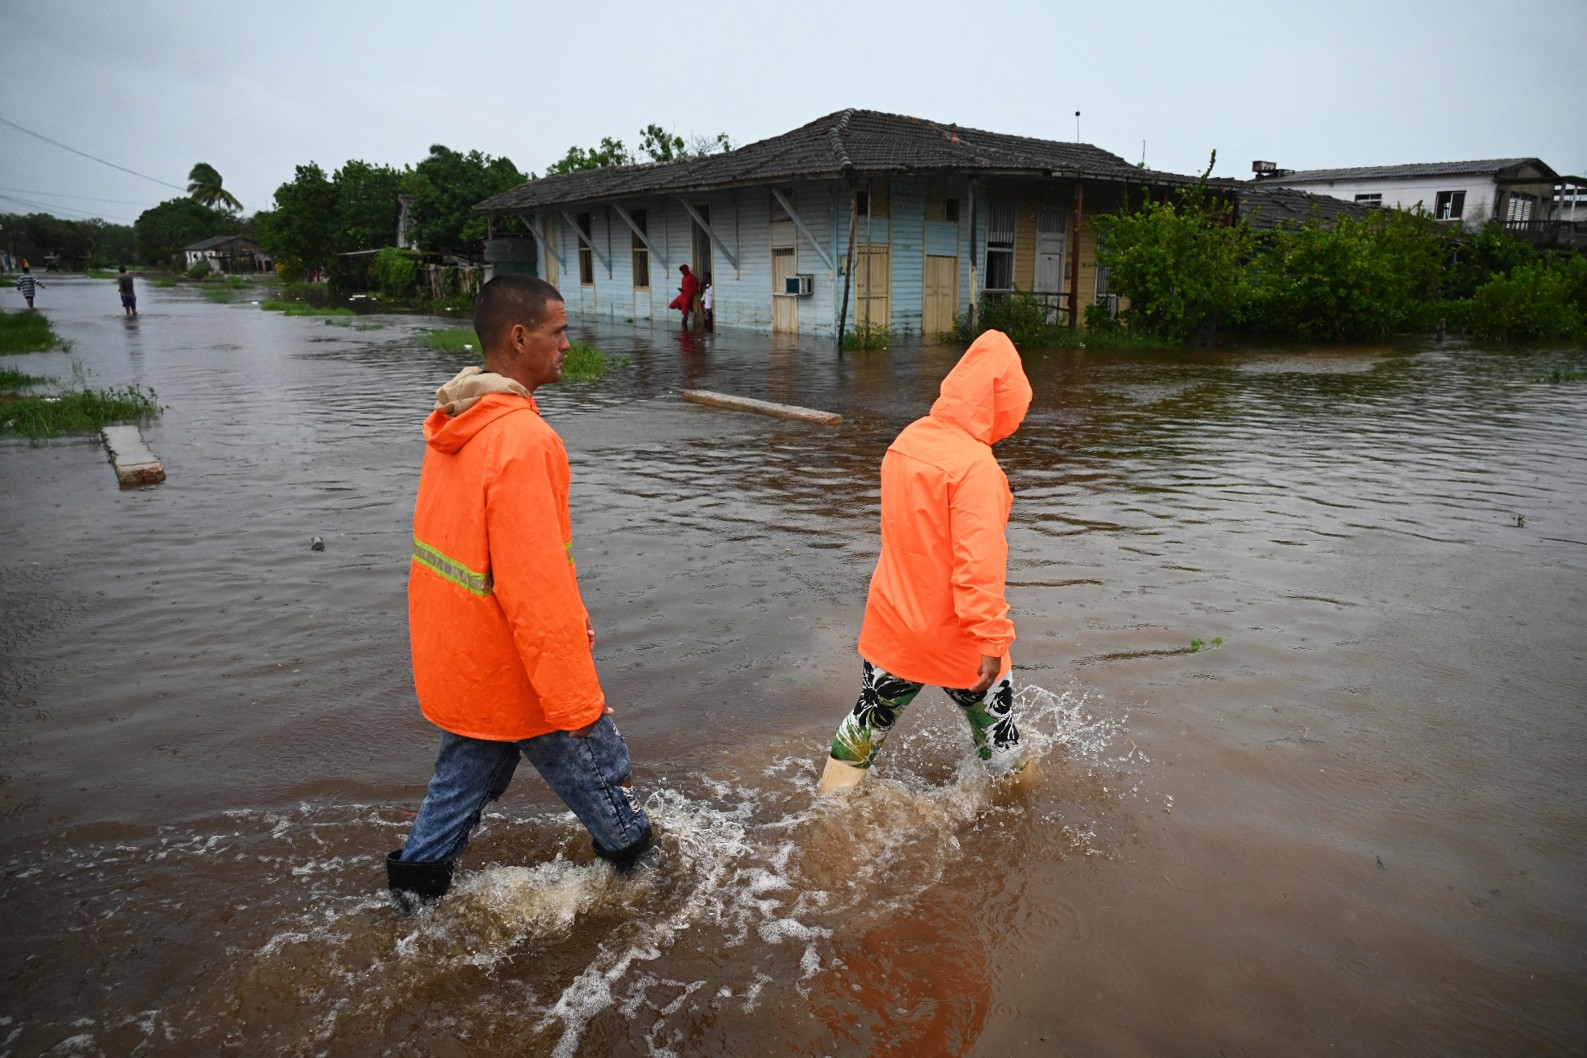 Pessoas caminham por uma rua inundada em Batabano, província de Mayabeque (Cuba), durante a passagem da tempestade tropical Idalia. — Foto: Yamil LAGE / AFP